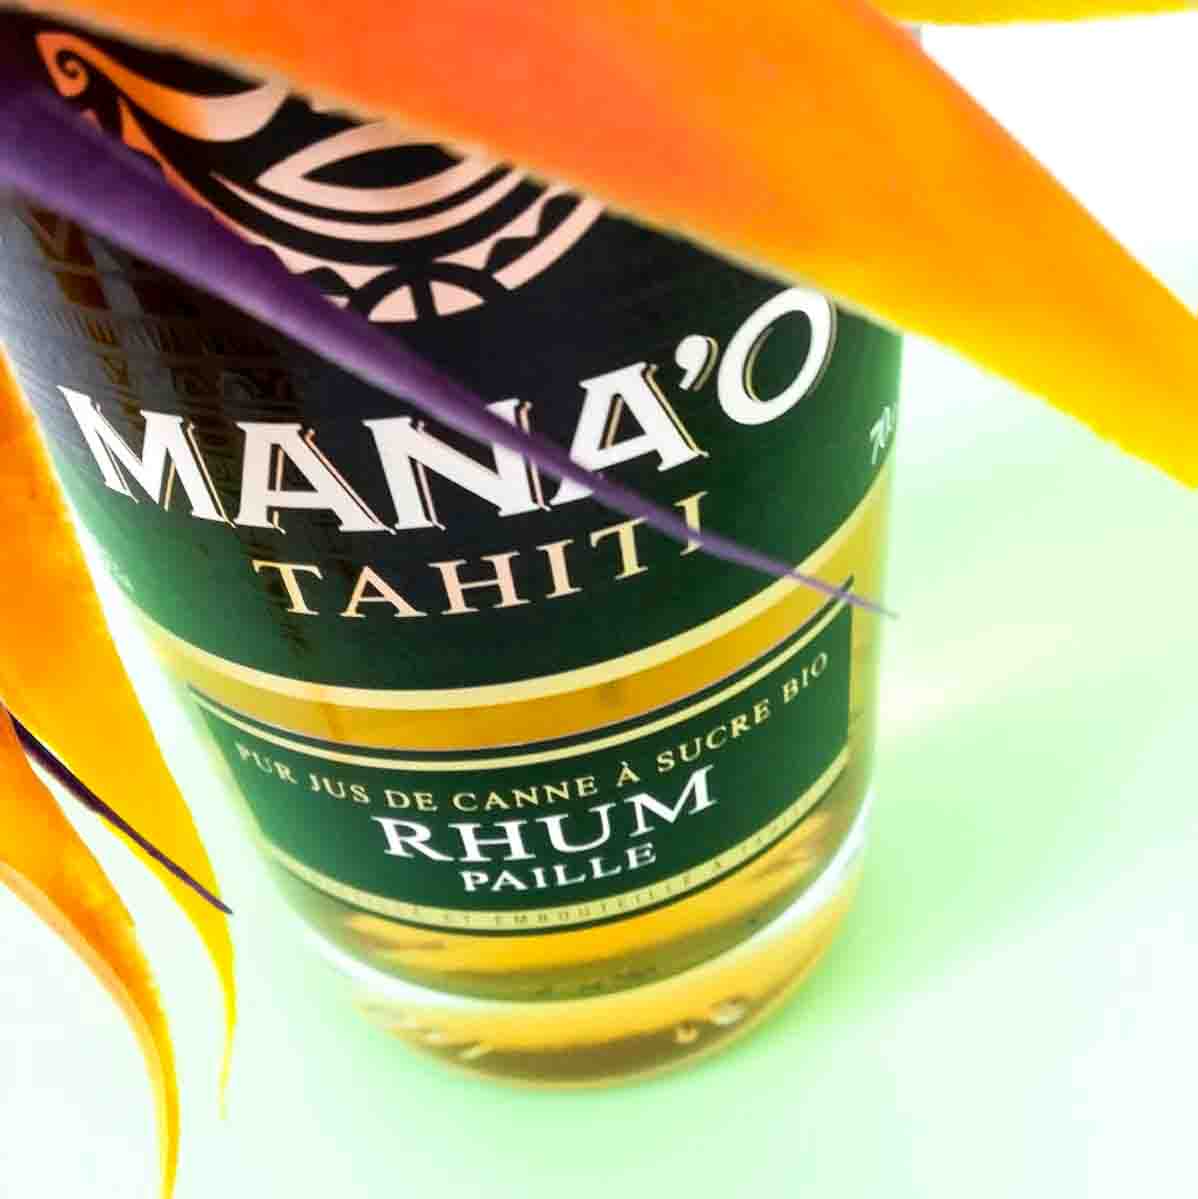 Mana'o rhum de Tahiti